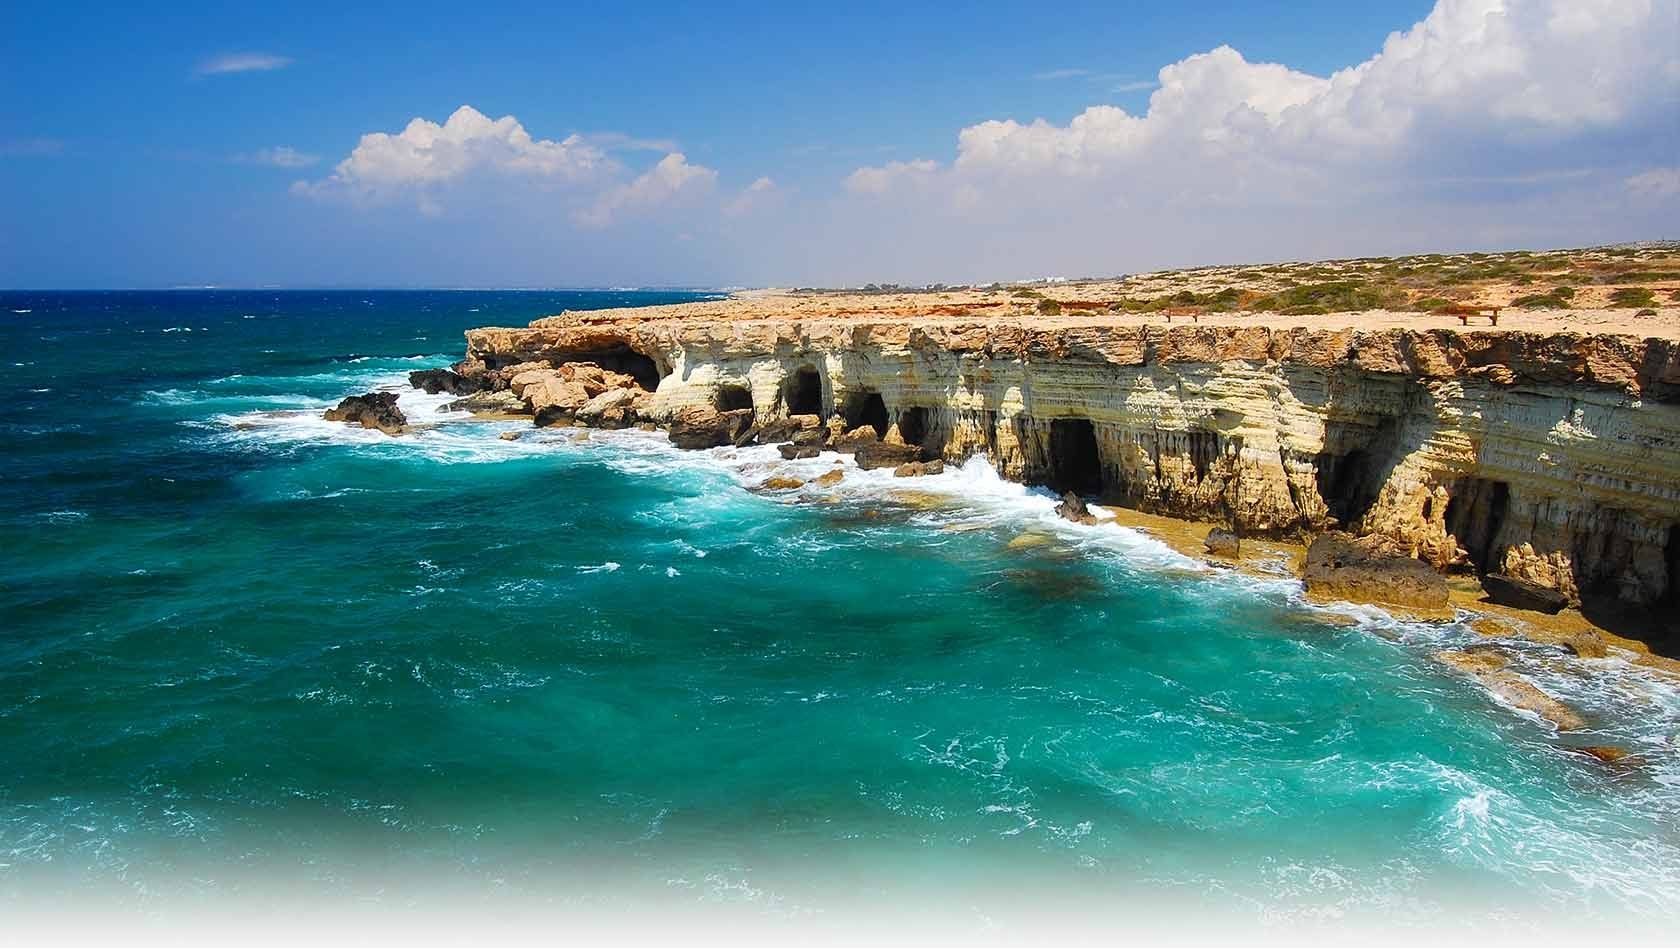 Египетское месторождение, обнаруженное итальянской компанией ENI, находится примерно в 6,5 км от границы исключительной экономической зоны Кипра